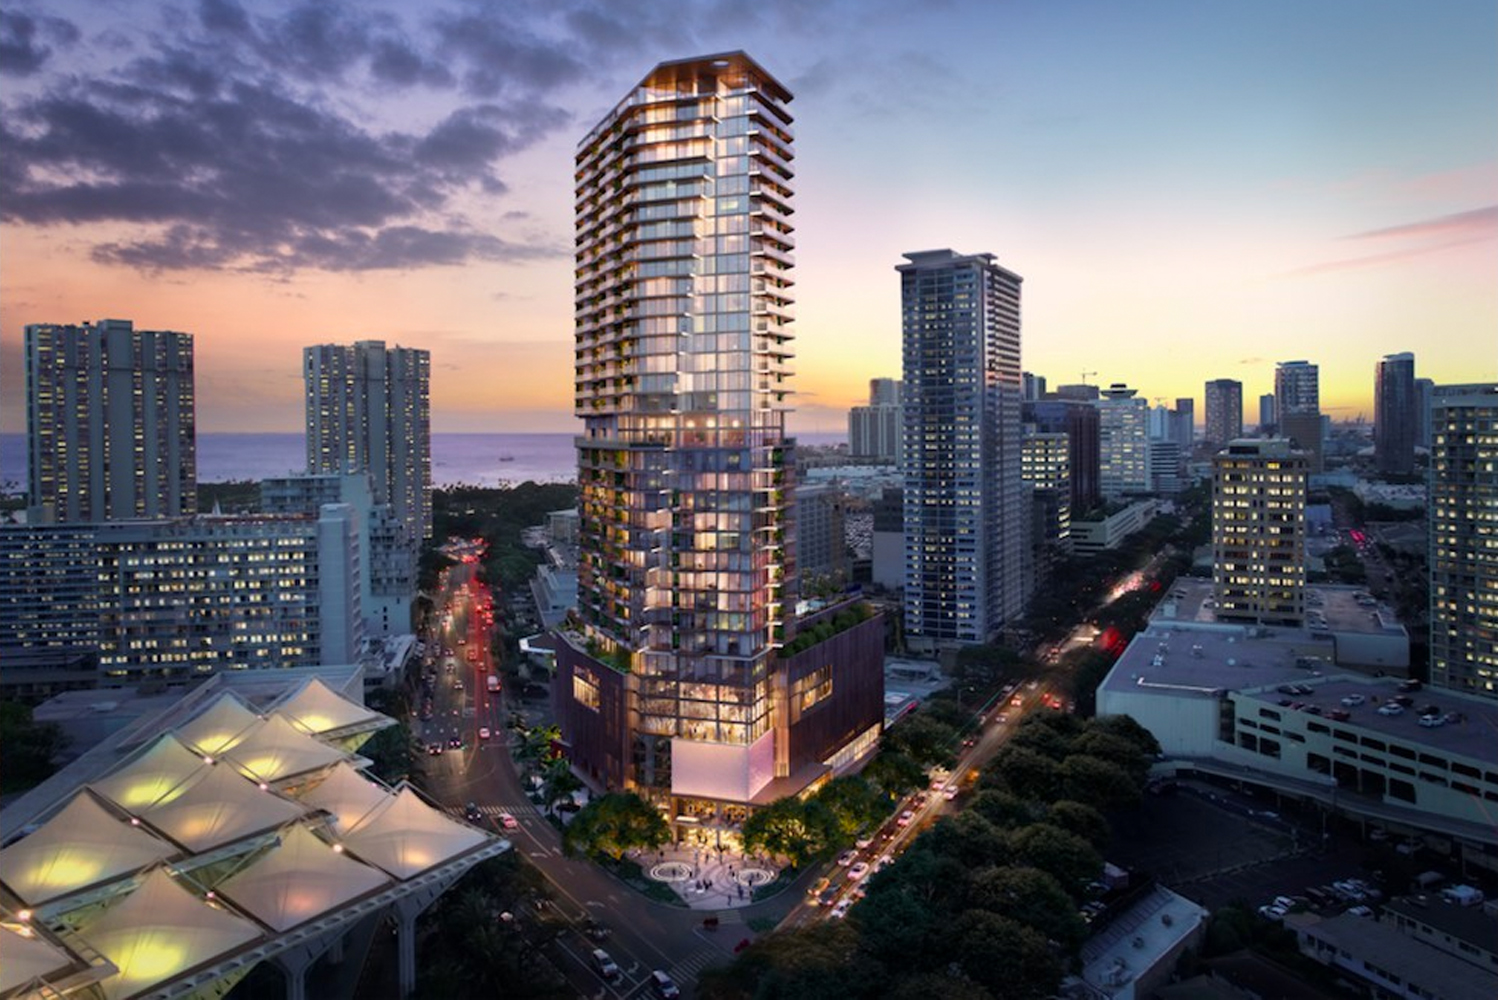 Mandarin Oriental to open property in Honolulu in 2022